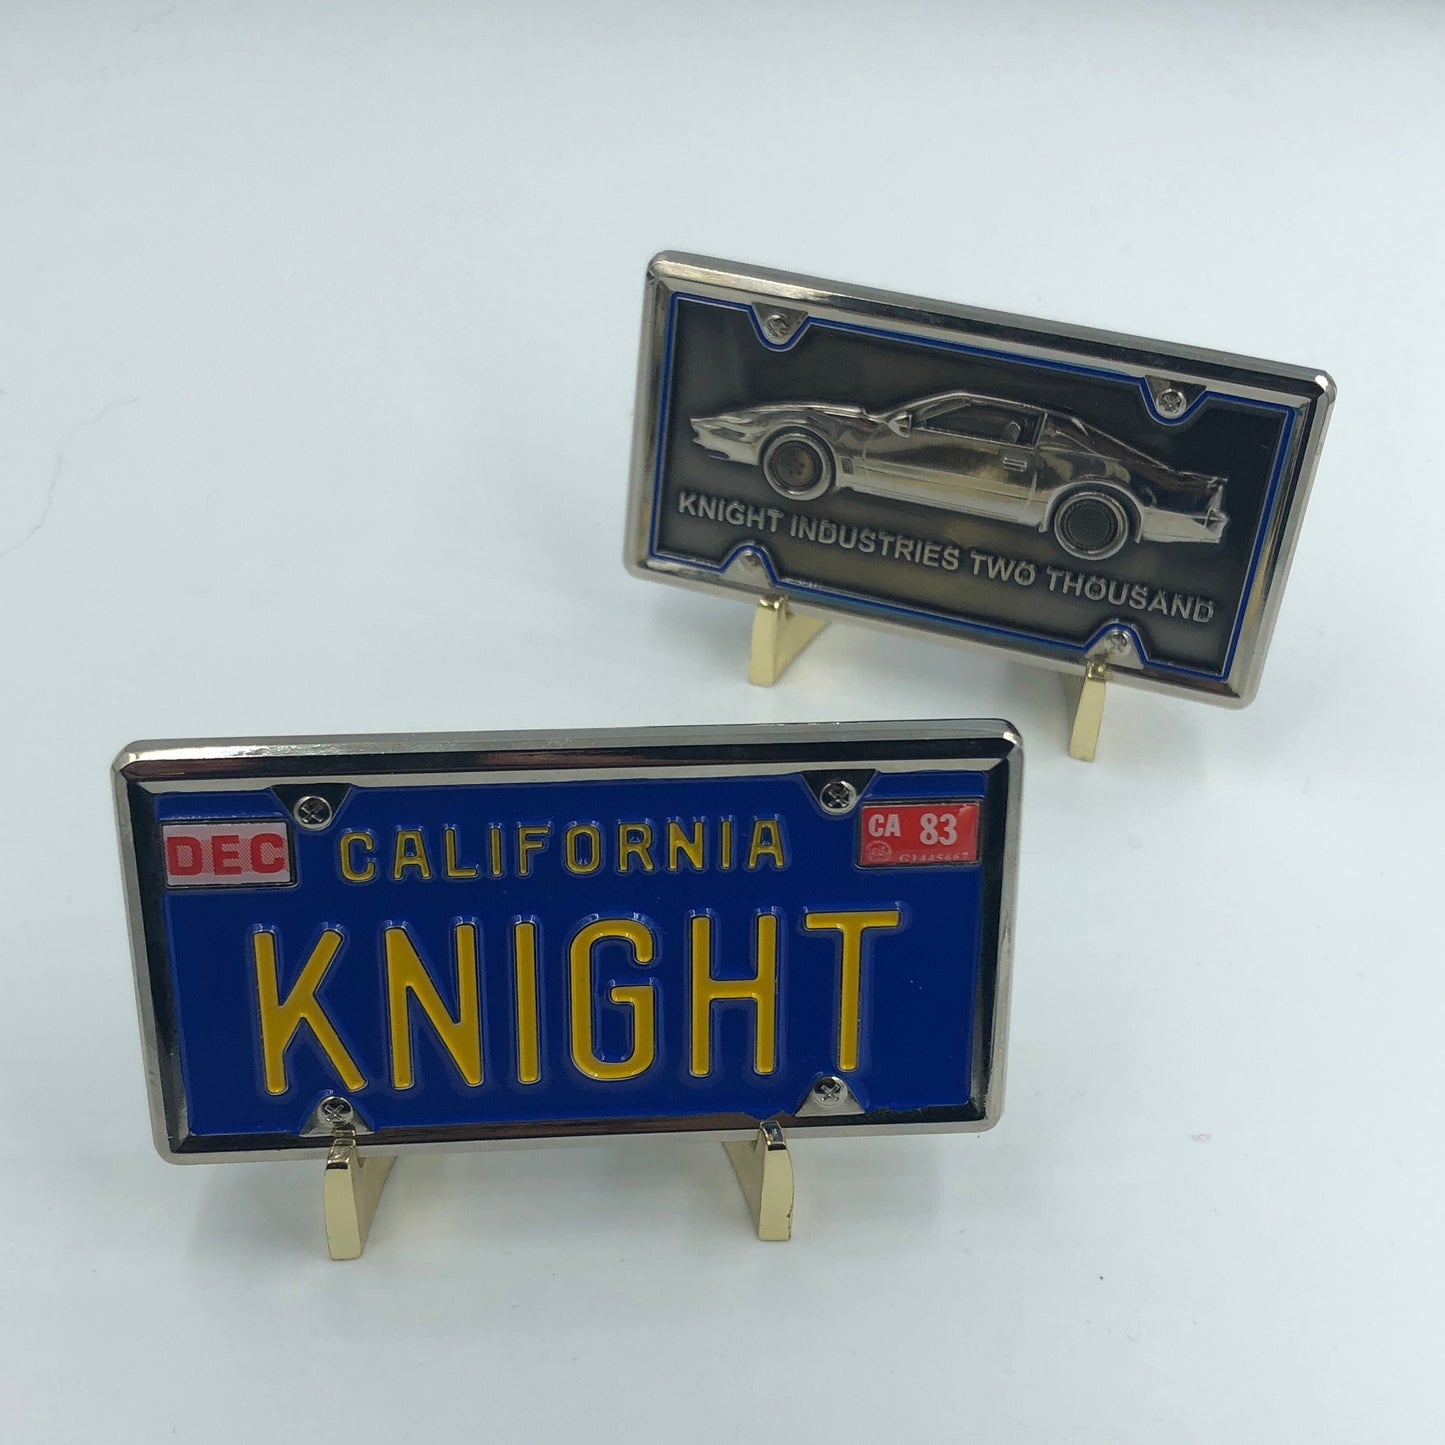 KK-017 Knight Rider KITT License Plate Challenge Coin Medallion